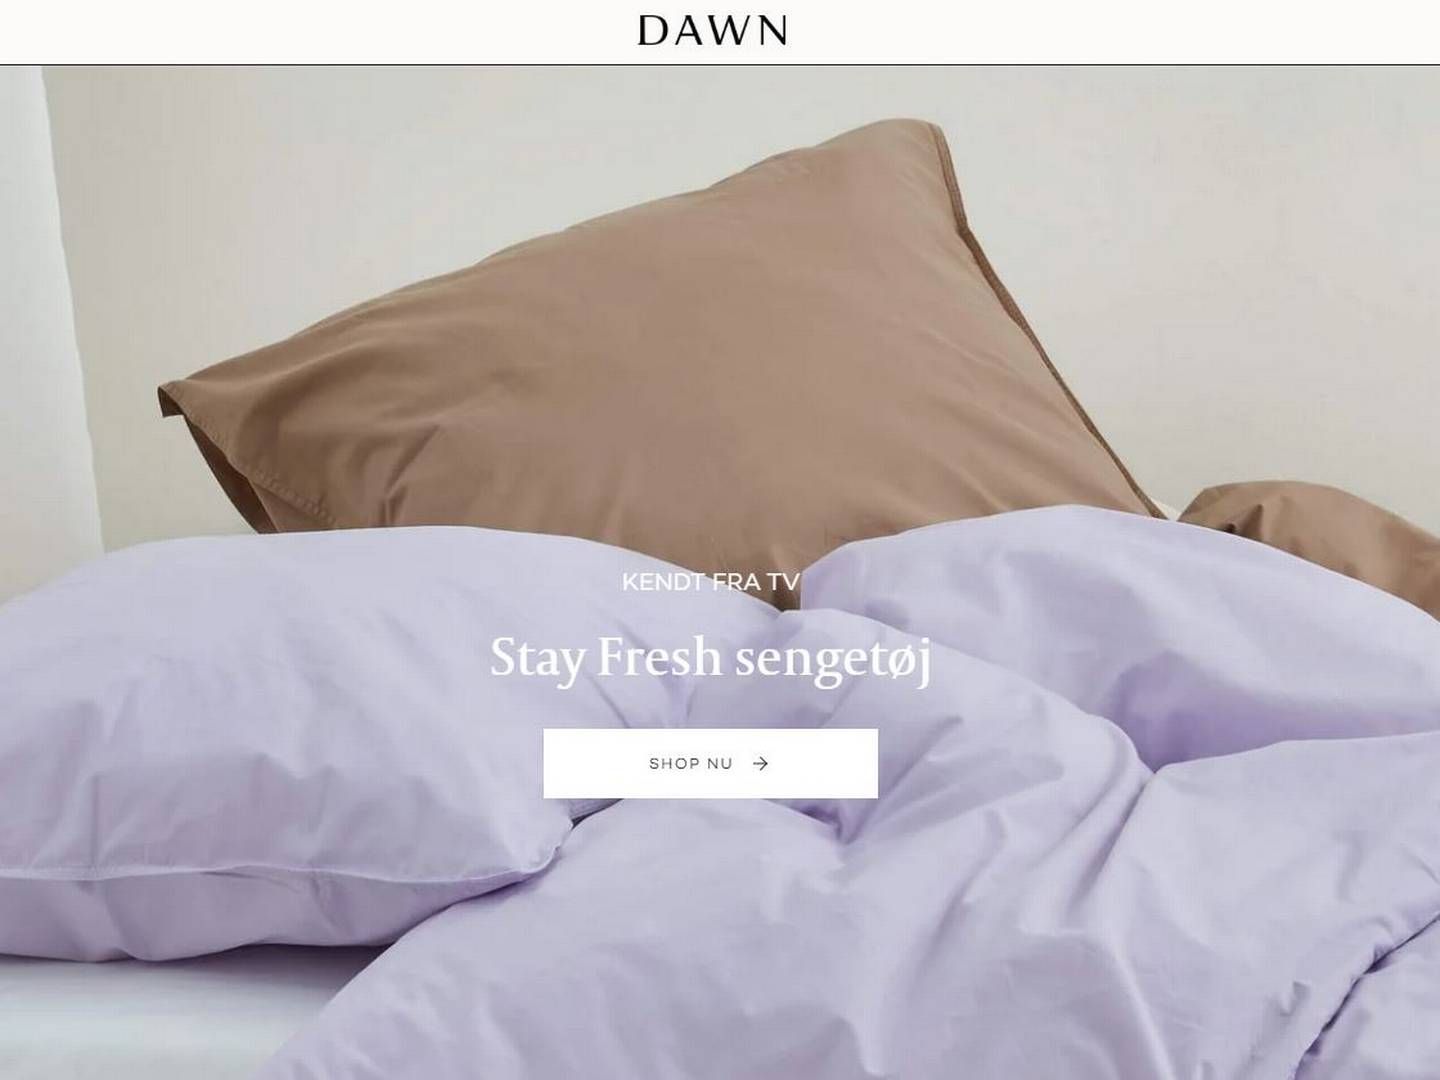 Virksomheden Dawn Designs producerer sengetøj med en ”lille mængde sølvsalt” i for en antibakteriel effekt. | Foto: Udklip af hjemmeside.